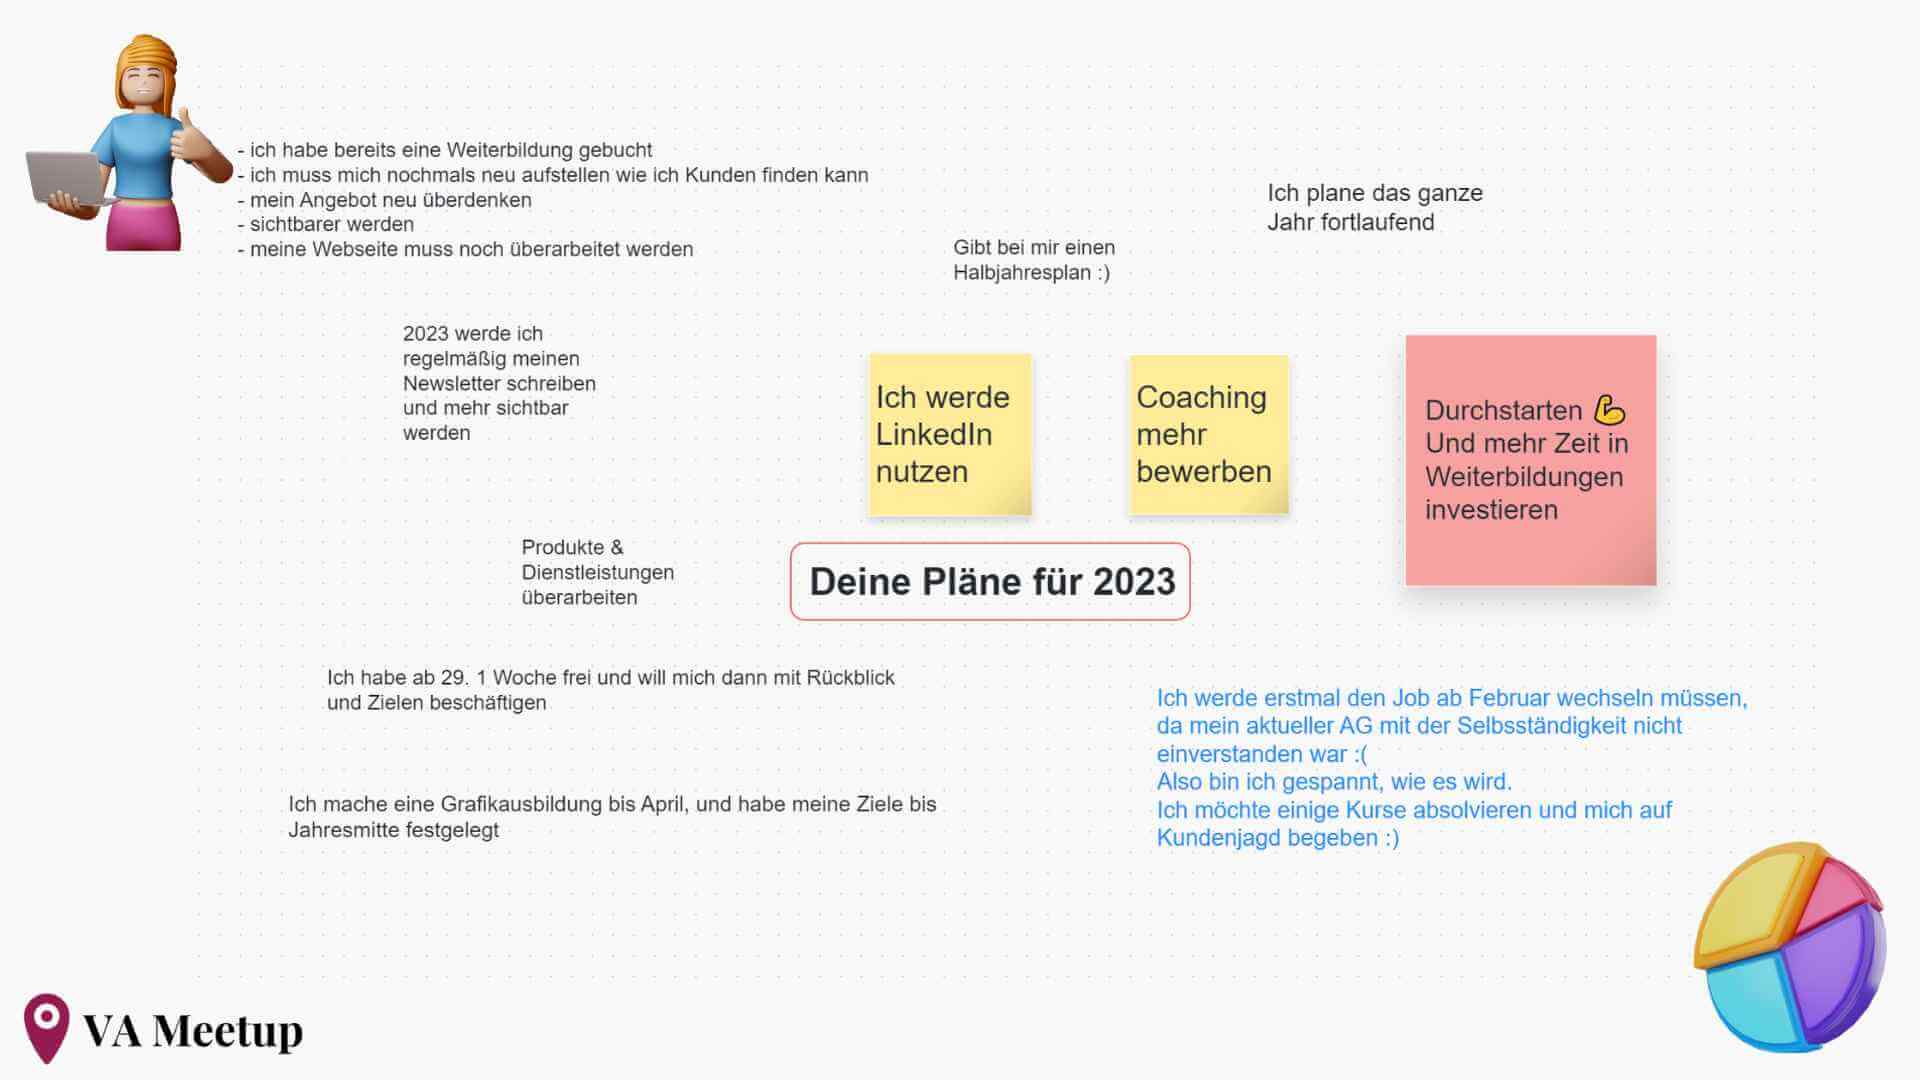 Notizen der Teilnehmer zum Thema Pläne für 2023